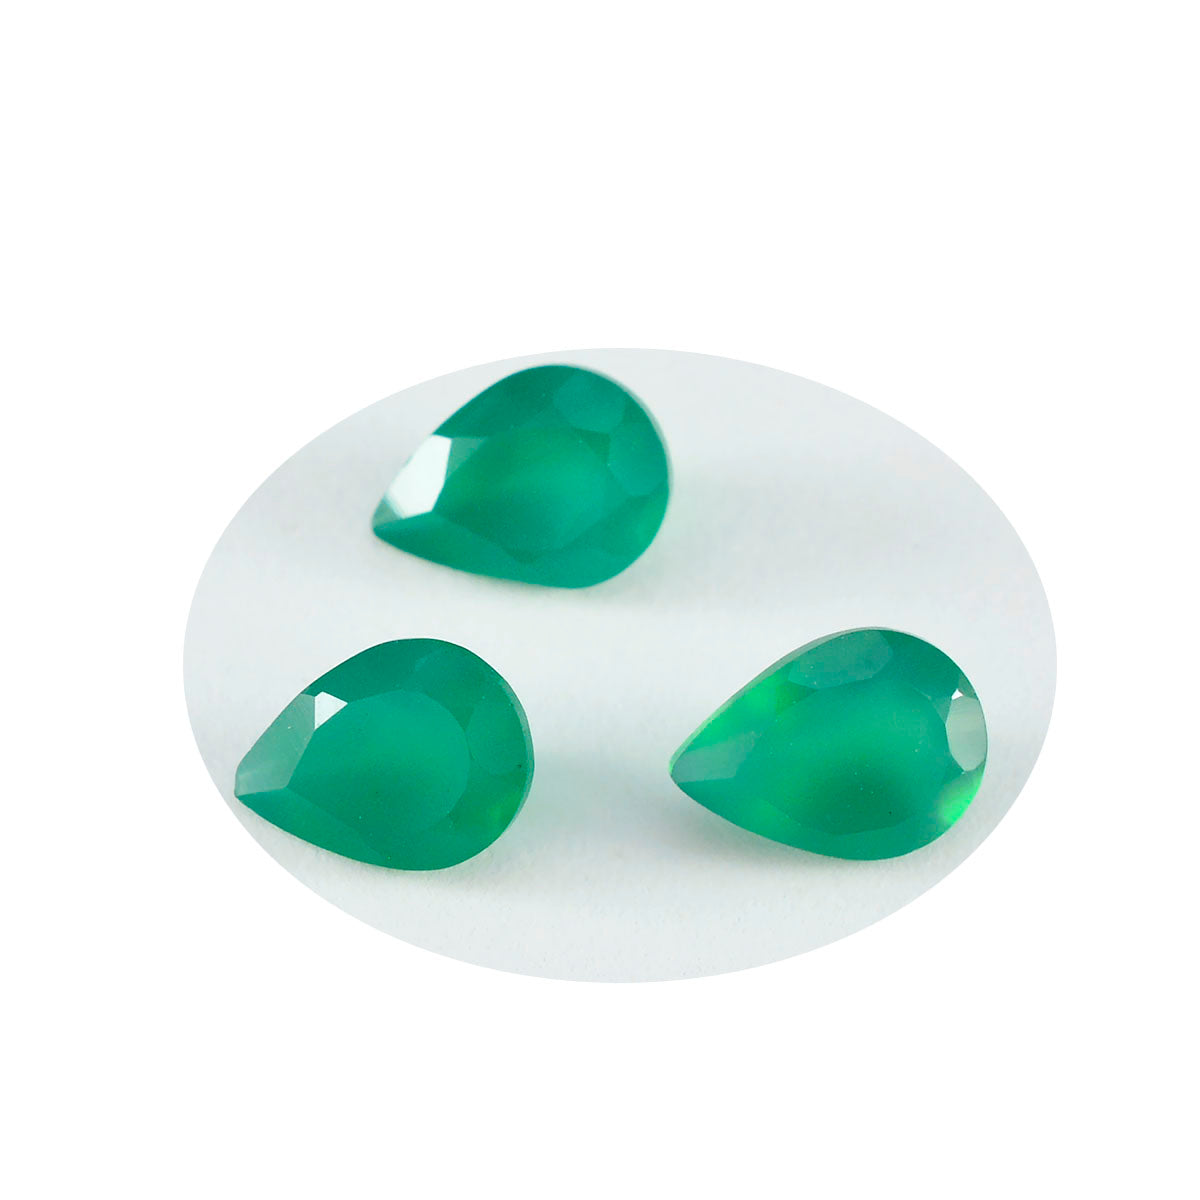 Riyogems 1 Stück echter grüner Onyx, facettiert, 6 x 9 mm, Birnenform, Edelsteine von erstaunlicher Qualität